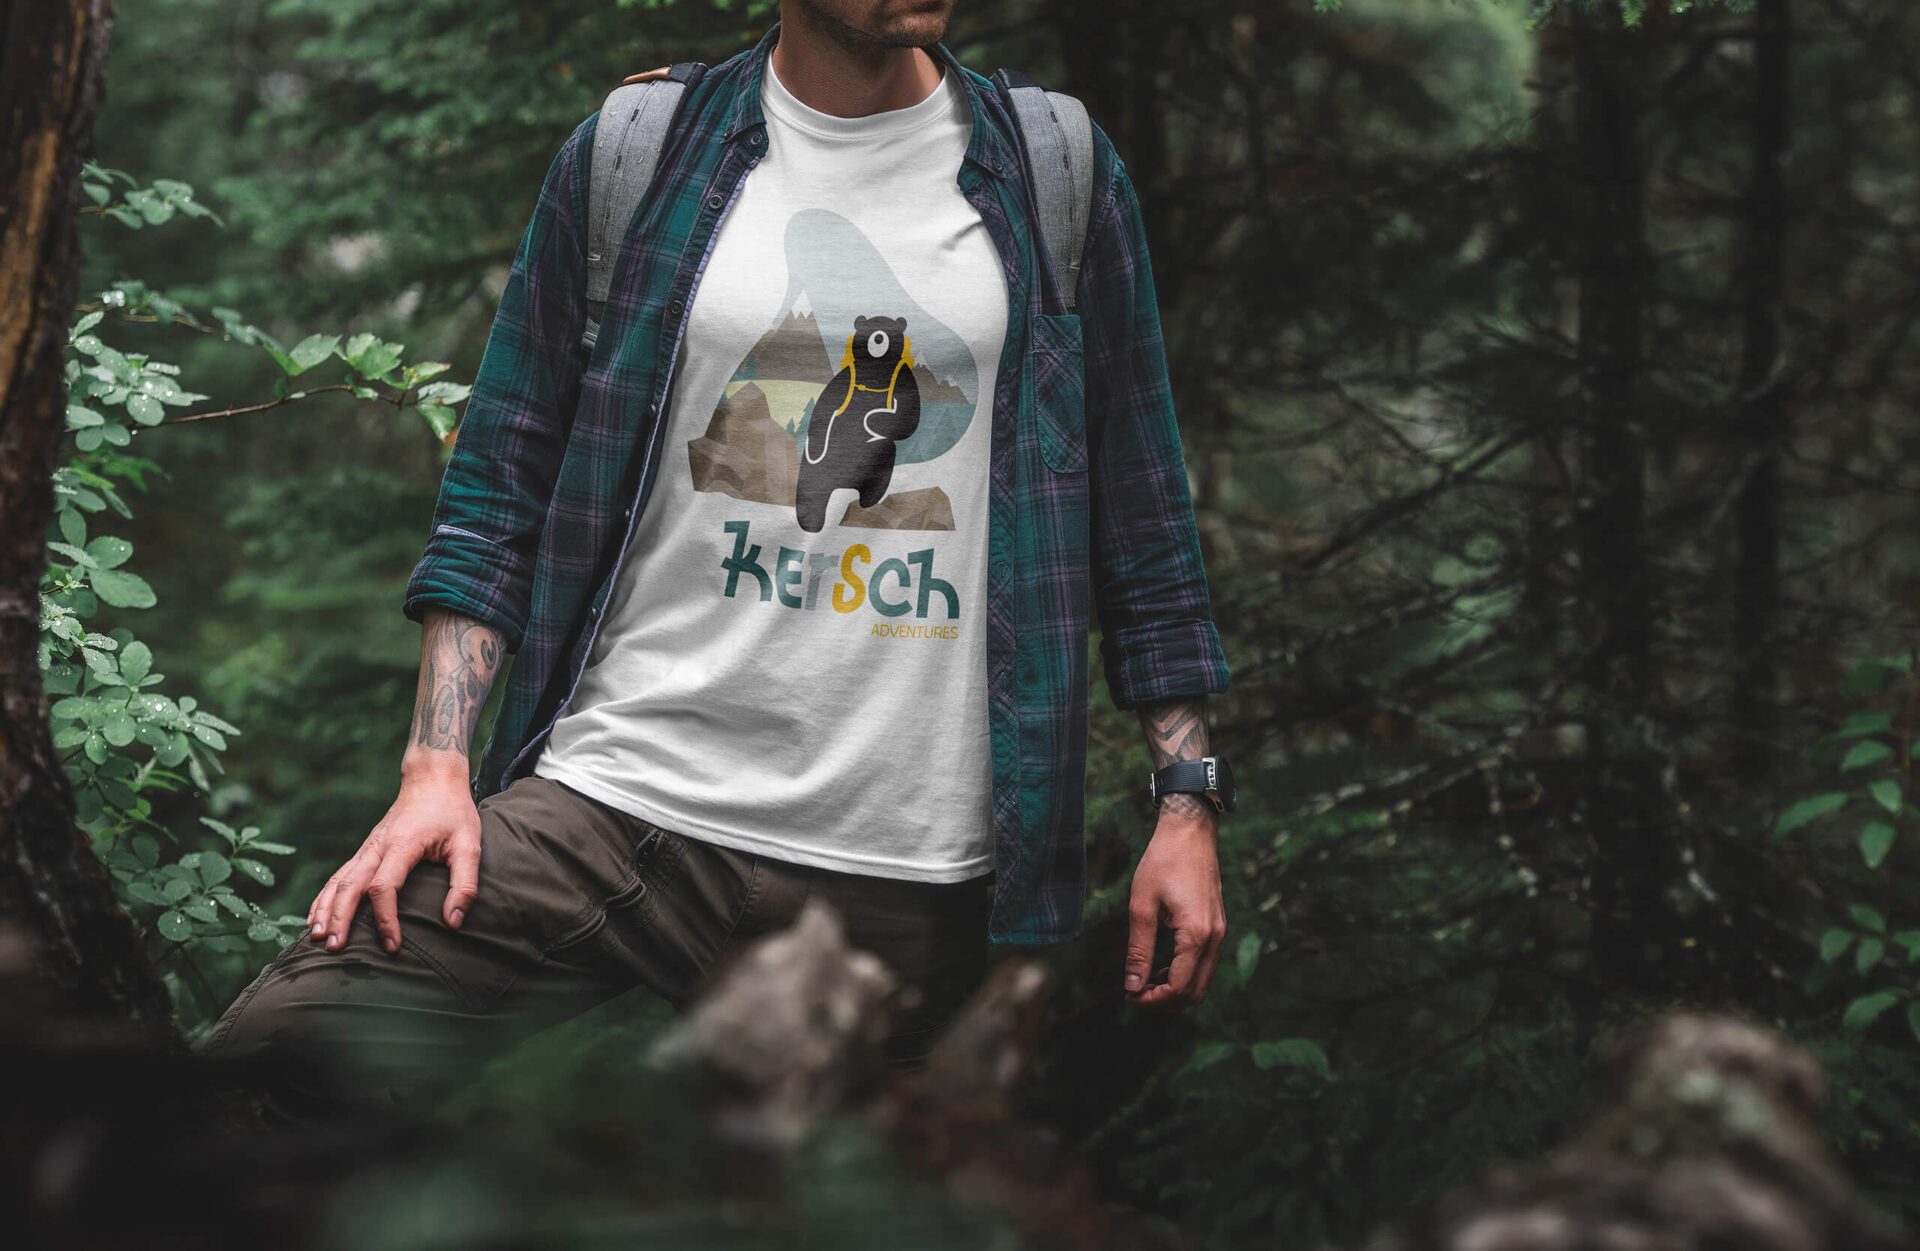 Kersch t-shirt made by Zooroma